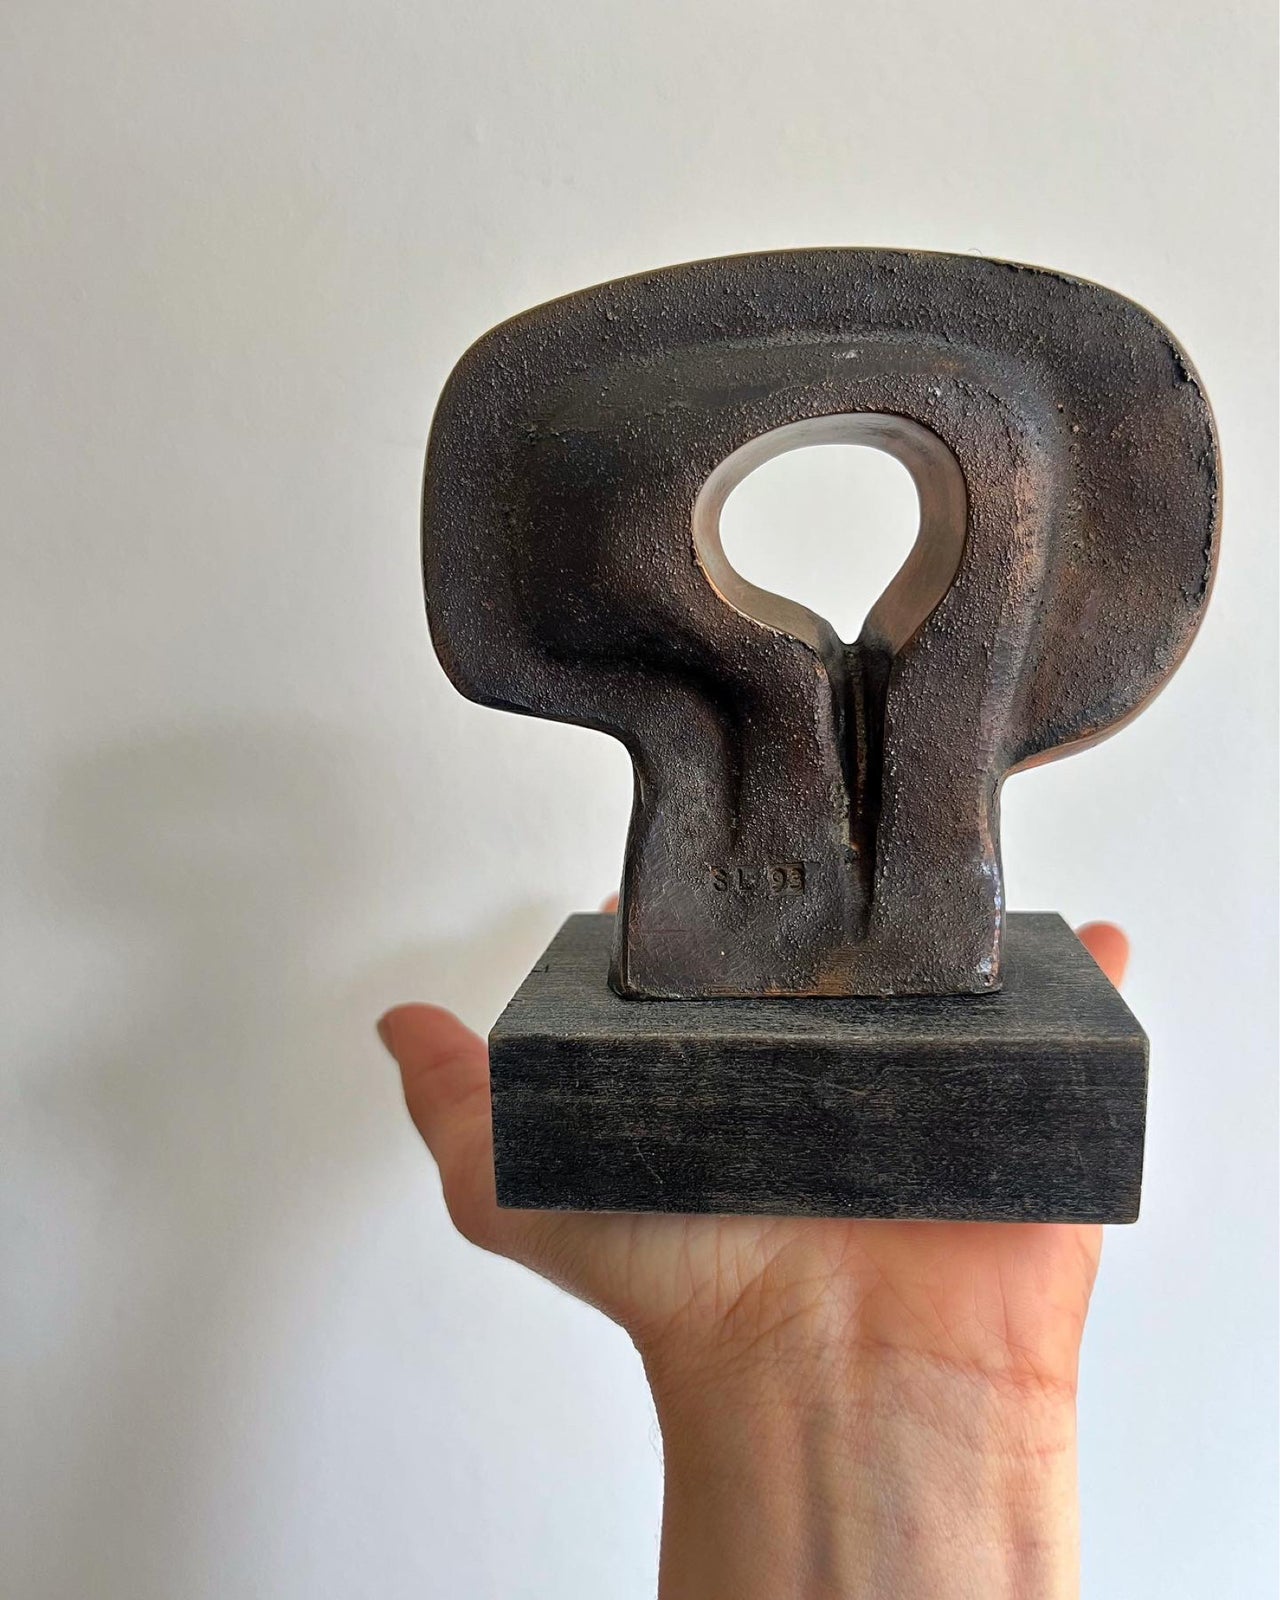 Skulptur, Steffen Lüttge, motiv: Bronze